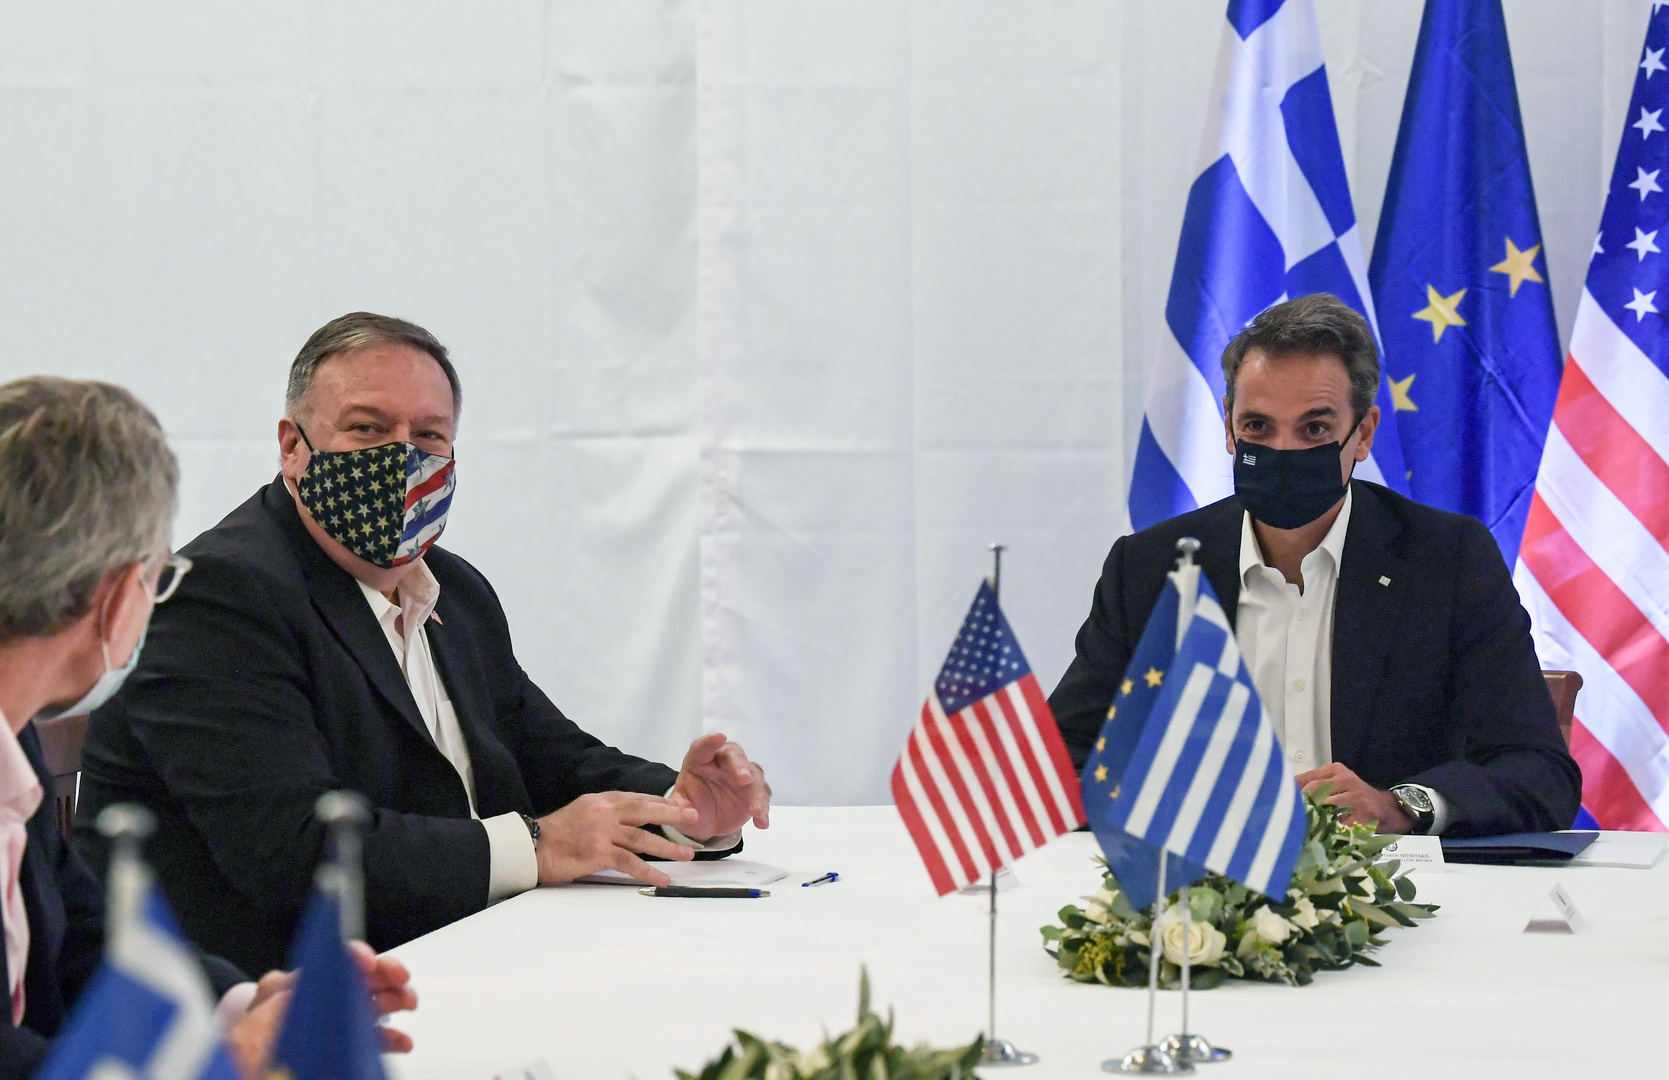 بومبيو: أمريكا تؤيد بشدة الحوار بين اليونان وتركيا